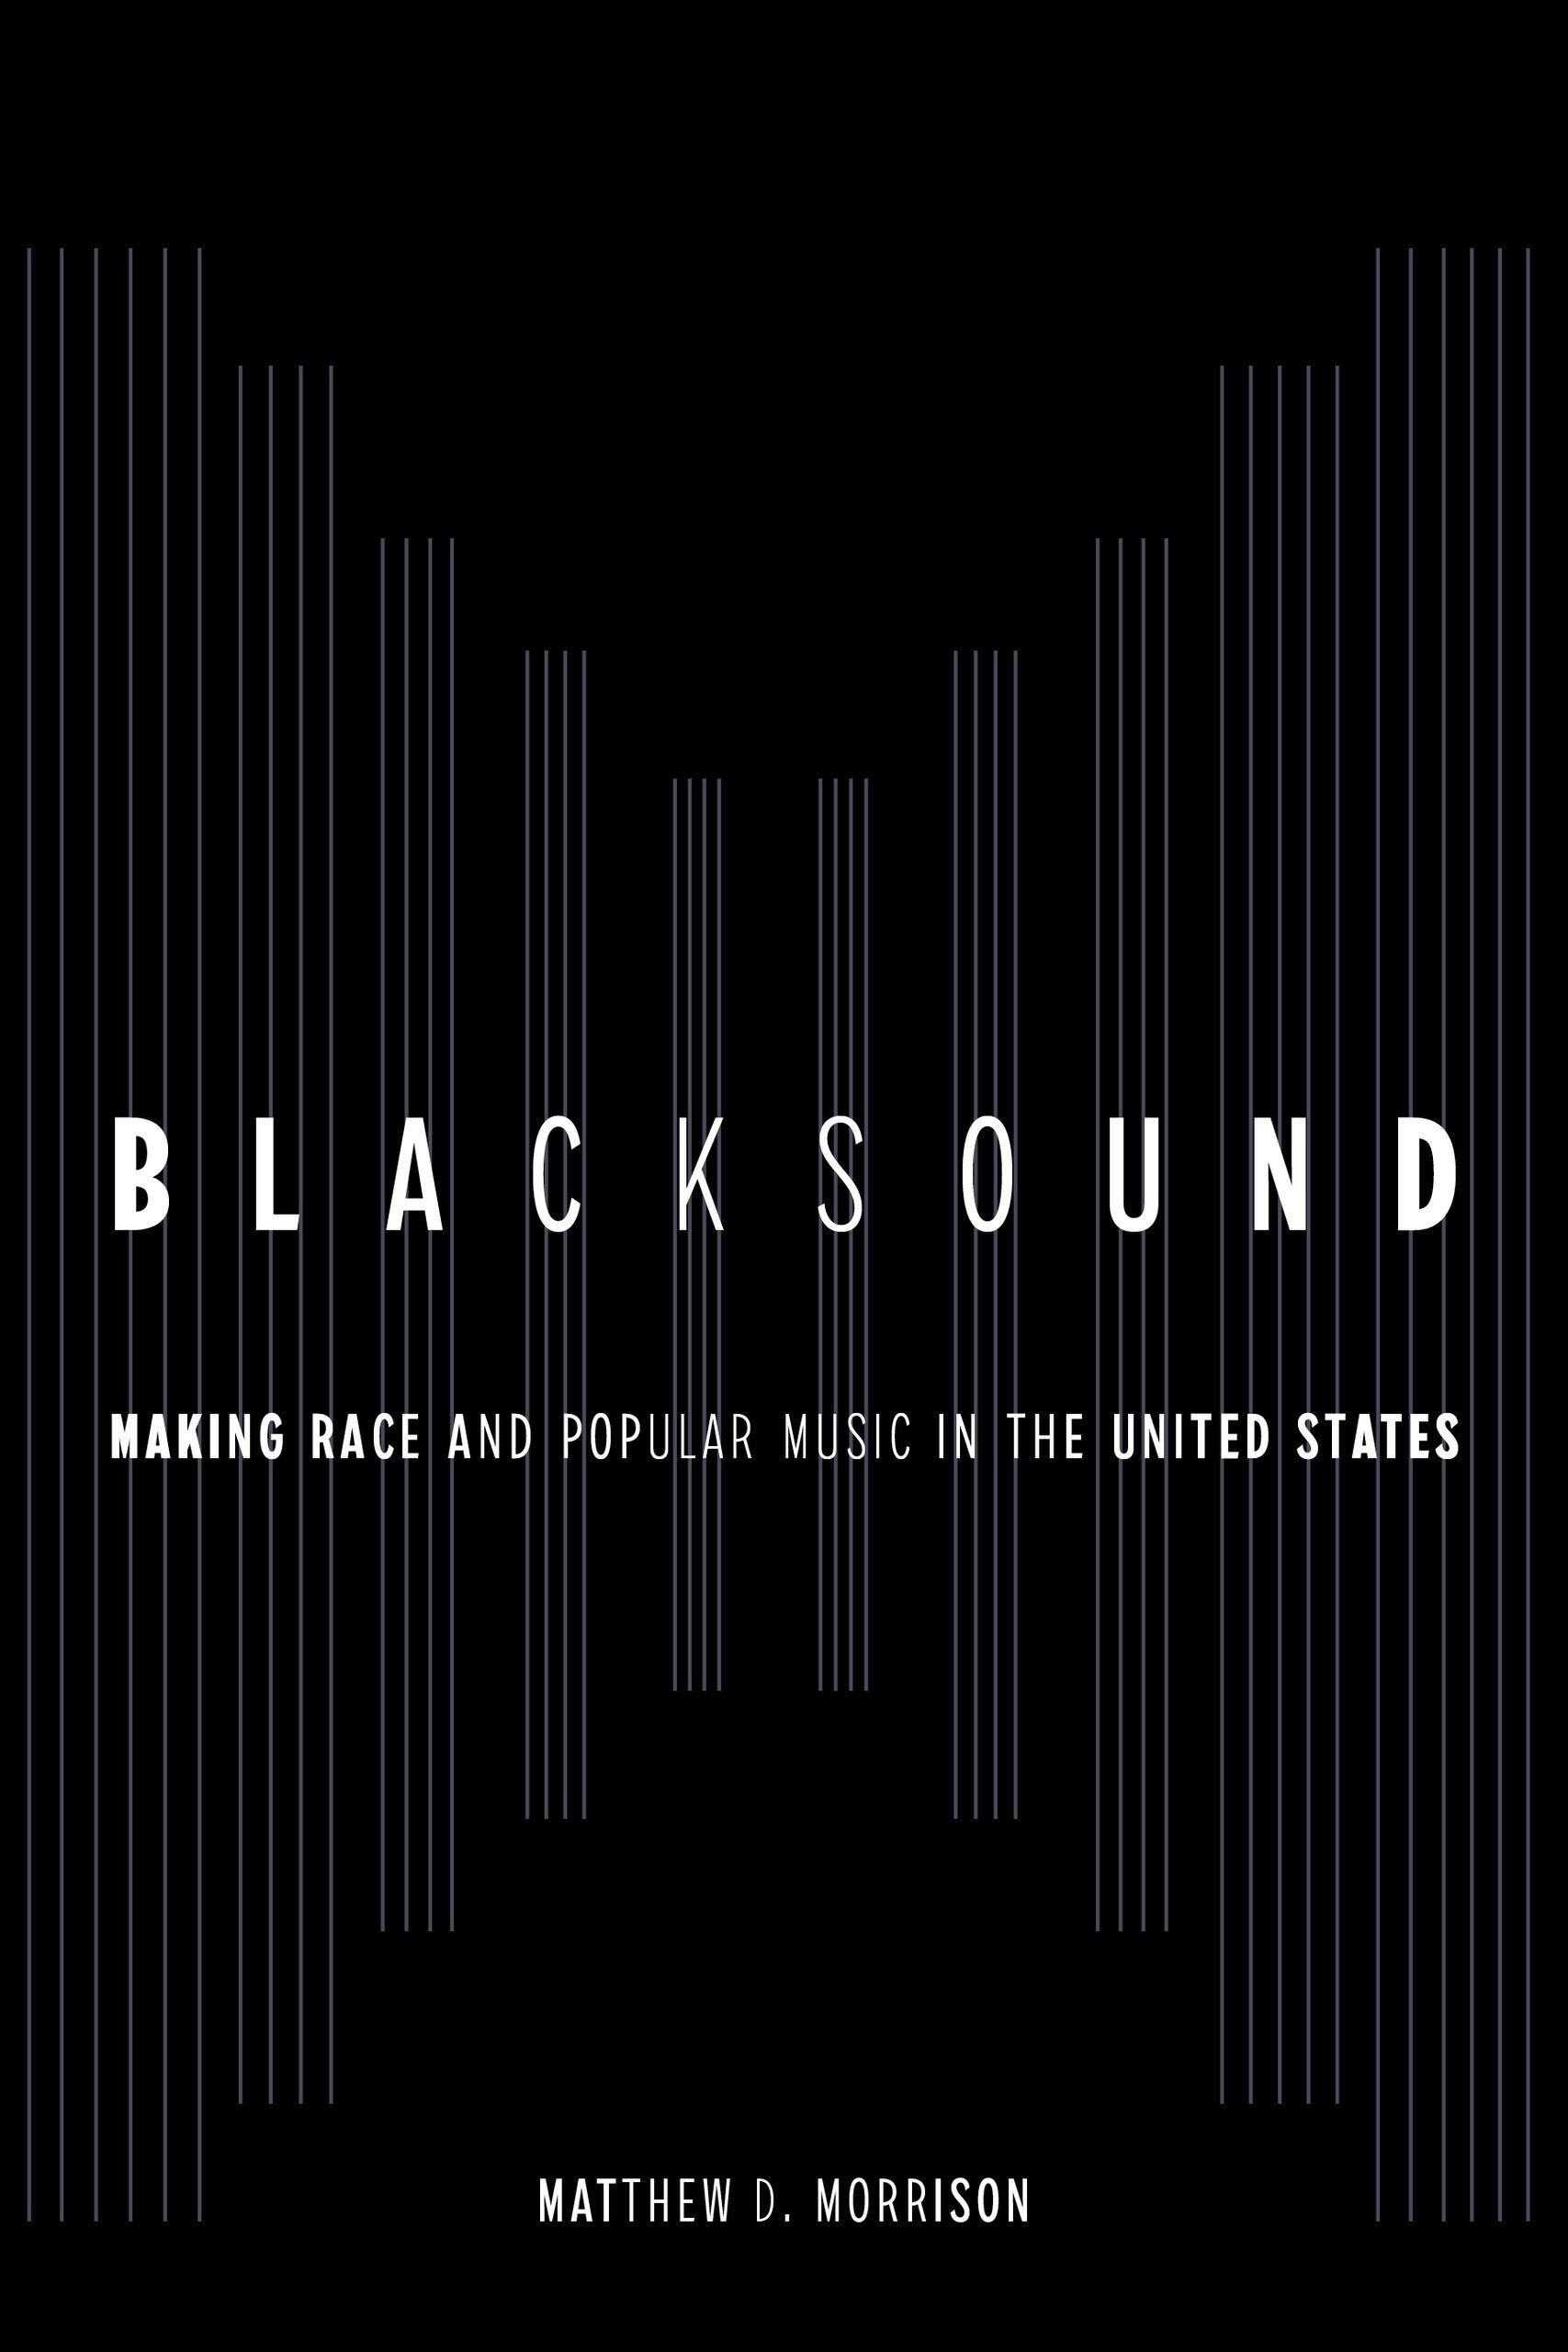 Blacksound by Matthew D. Morrison